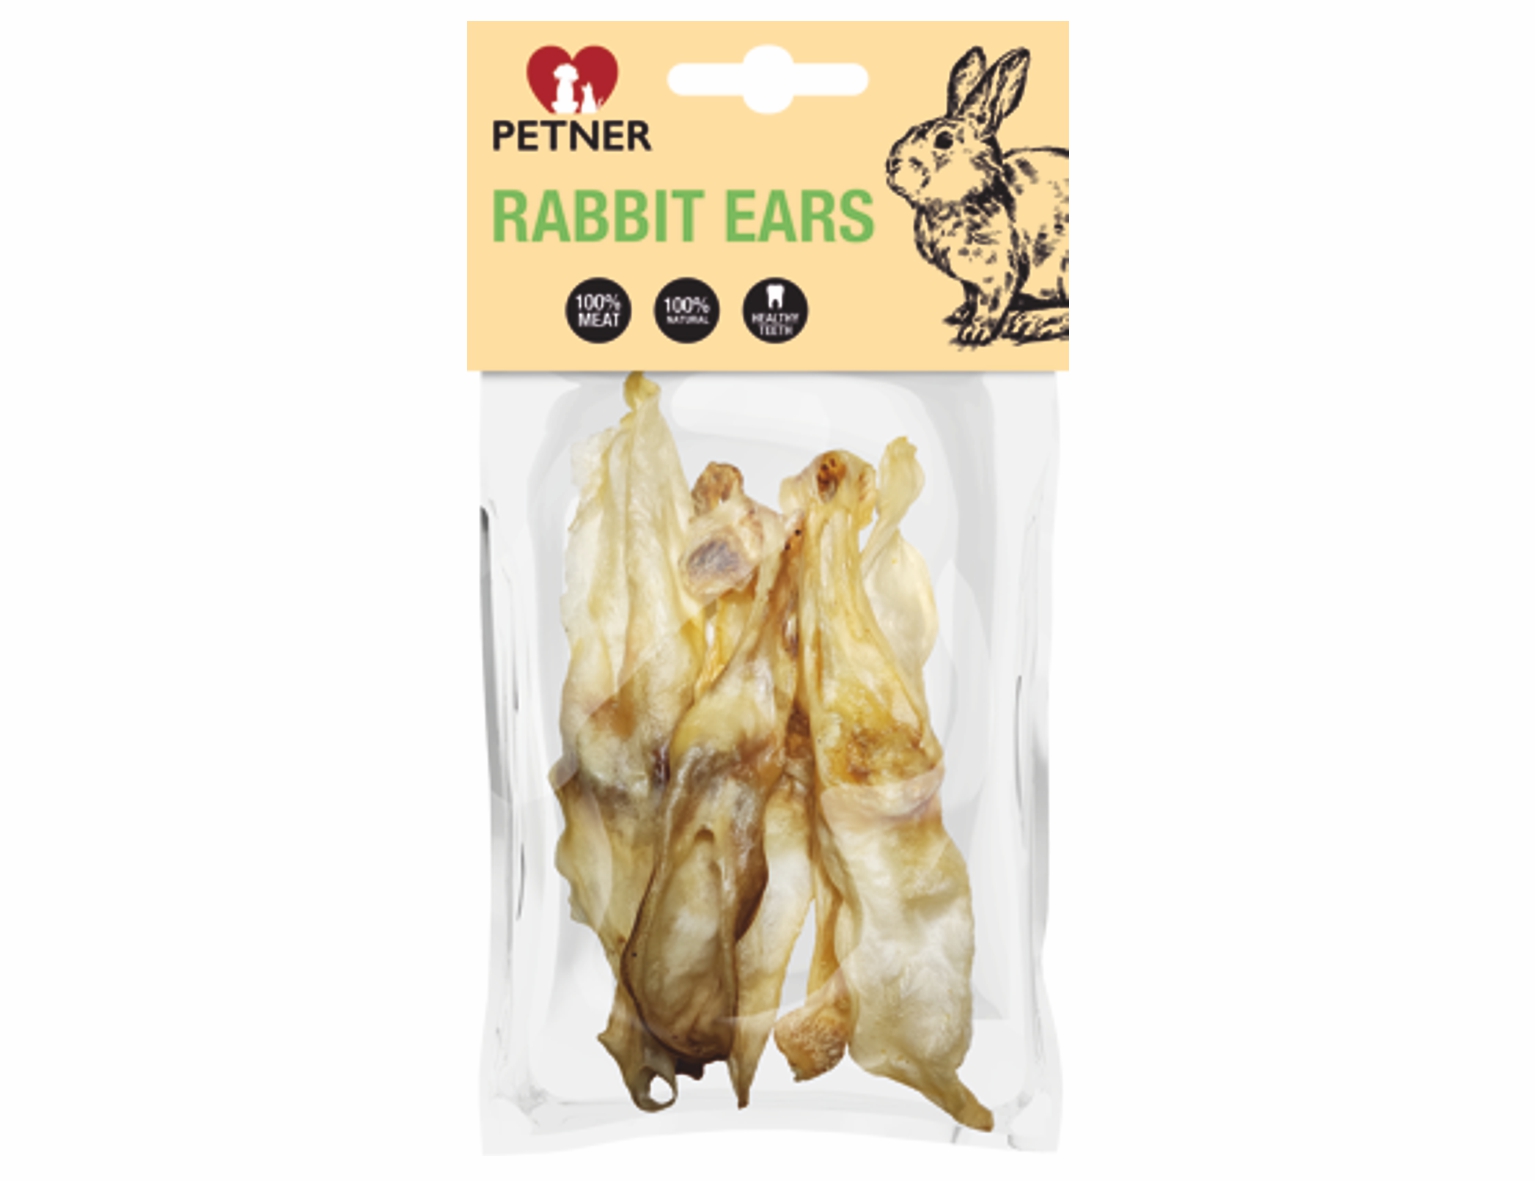 PETNER pamlsky - 100% sušené králičie uši 50g